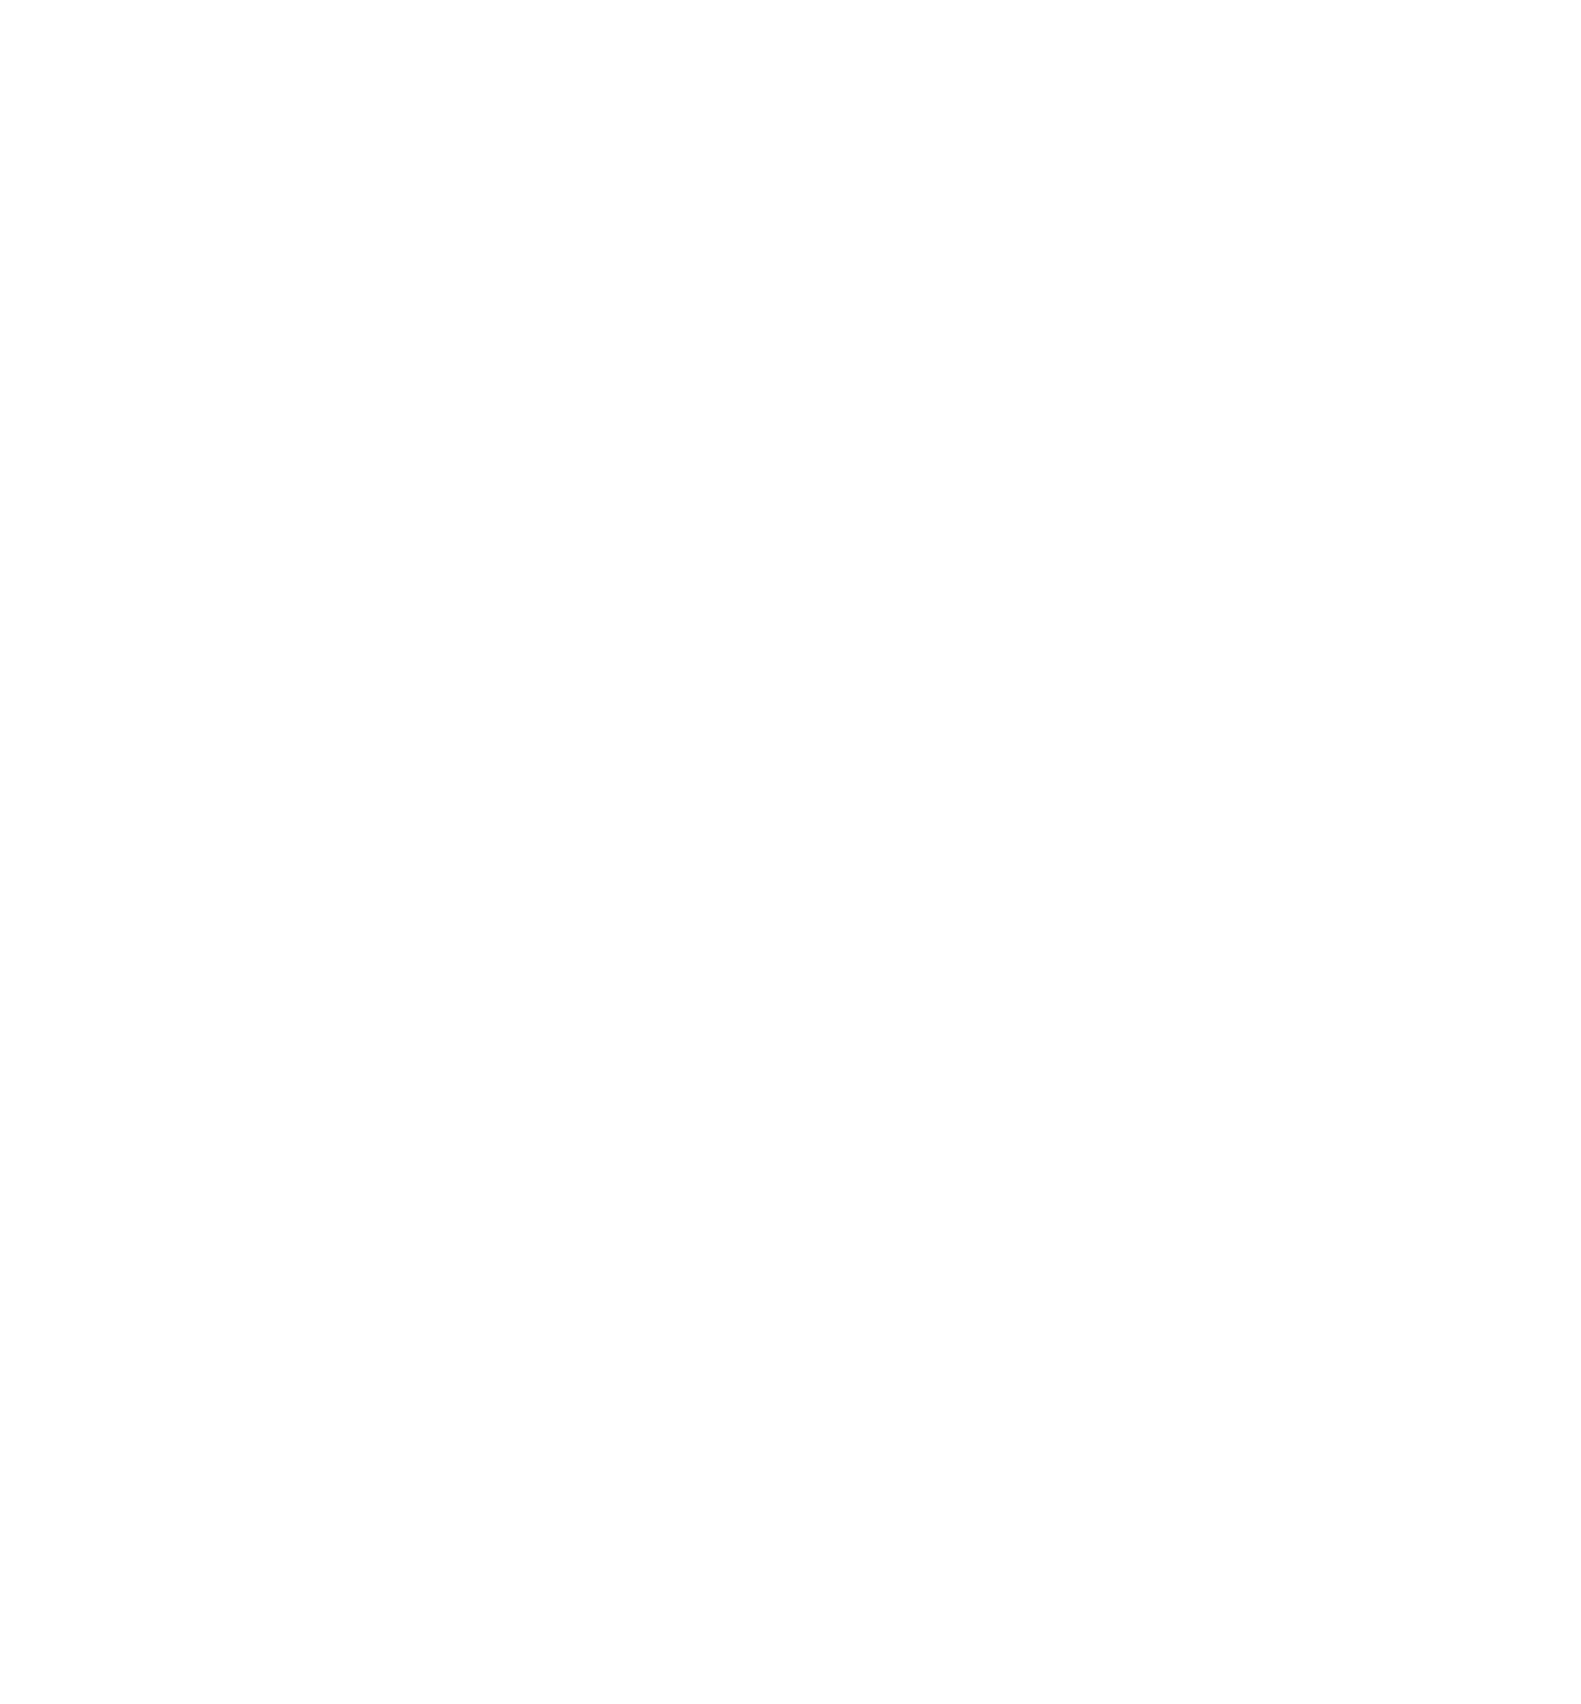 Acadiana Animal Aid